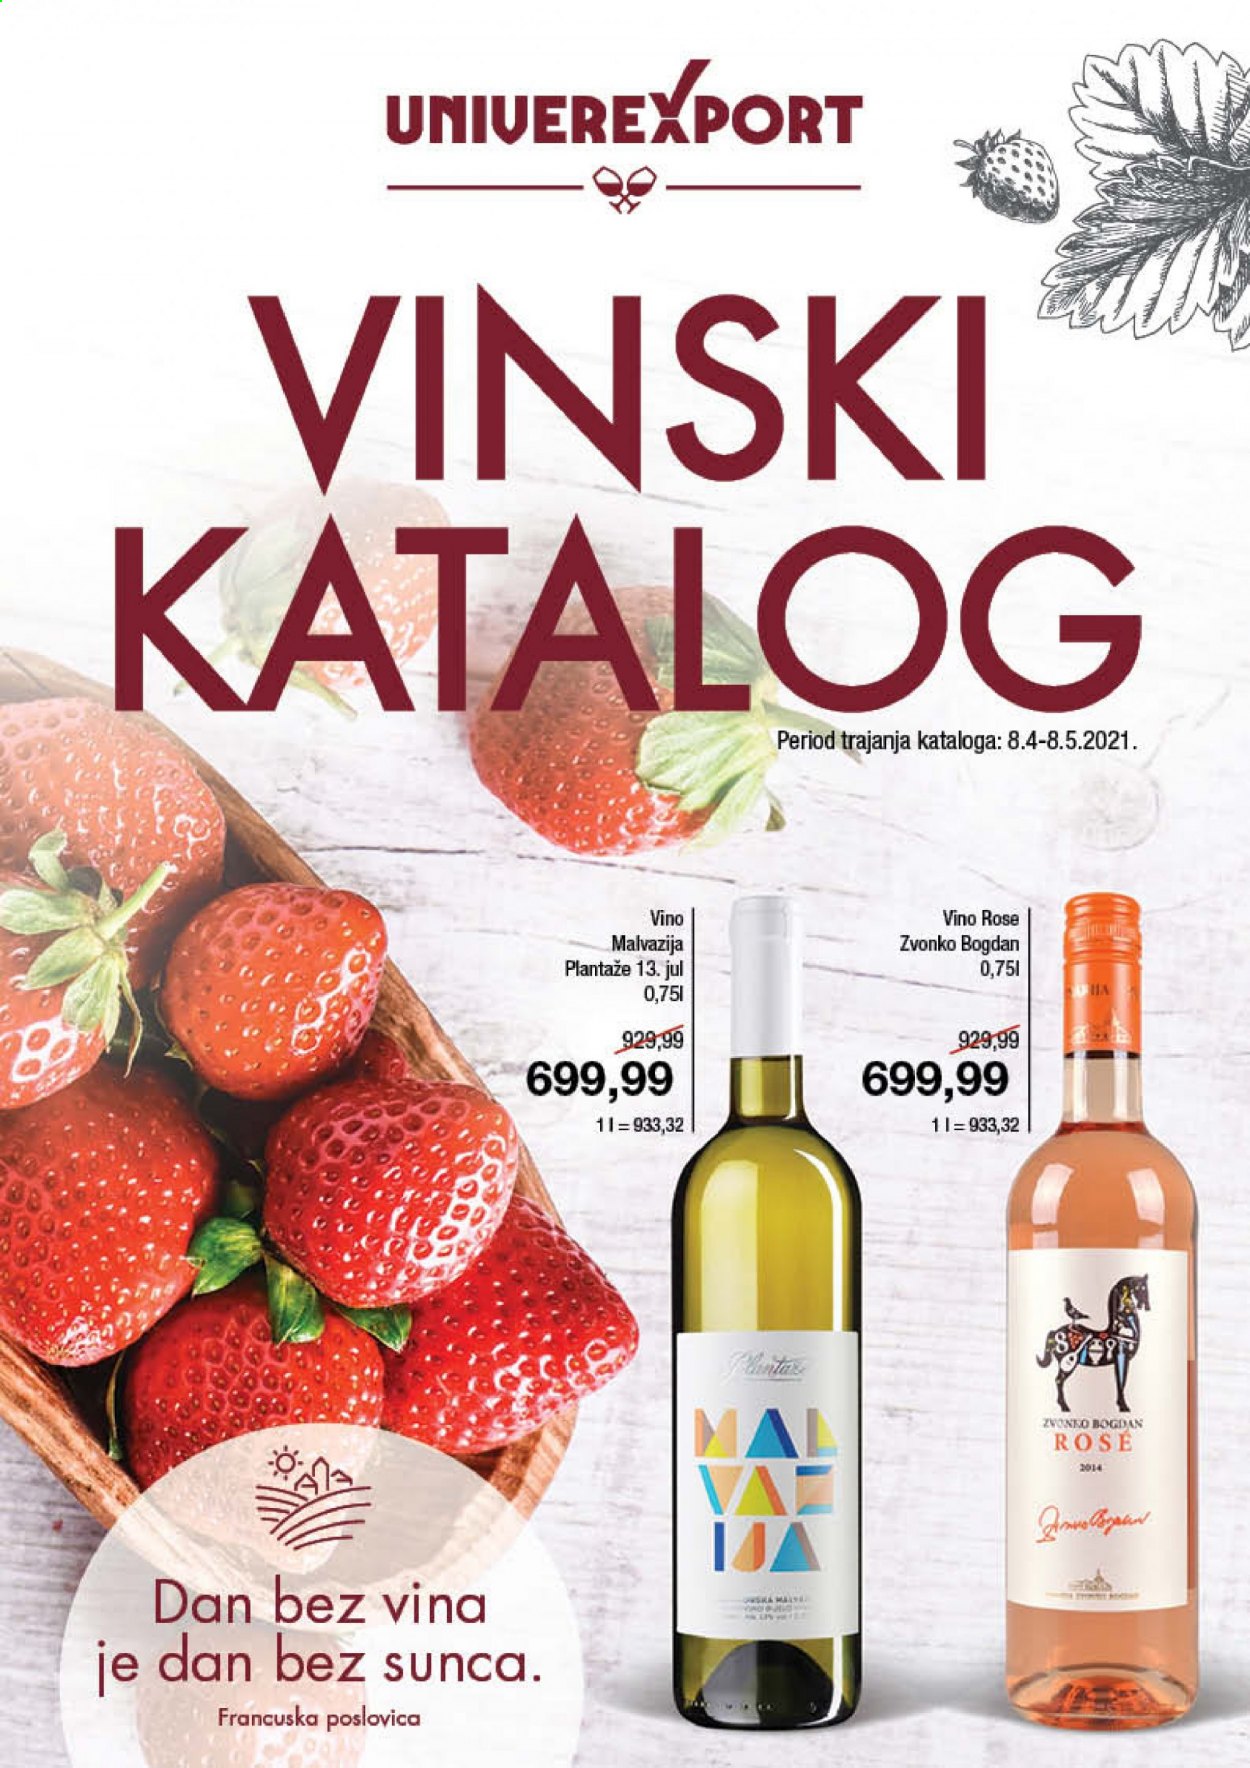 thumbnail - Univerexport katalog - 08.04.2021 - 08.05.2021 - Proizvodi na akciji - roze vino, vino. Stranica 1.